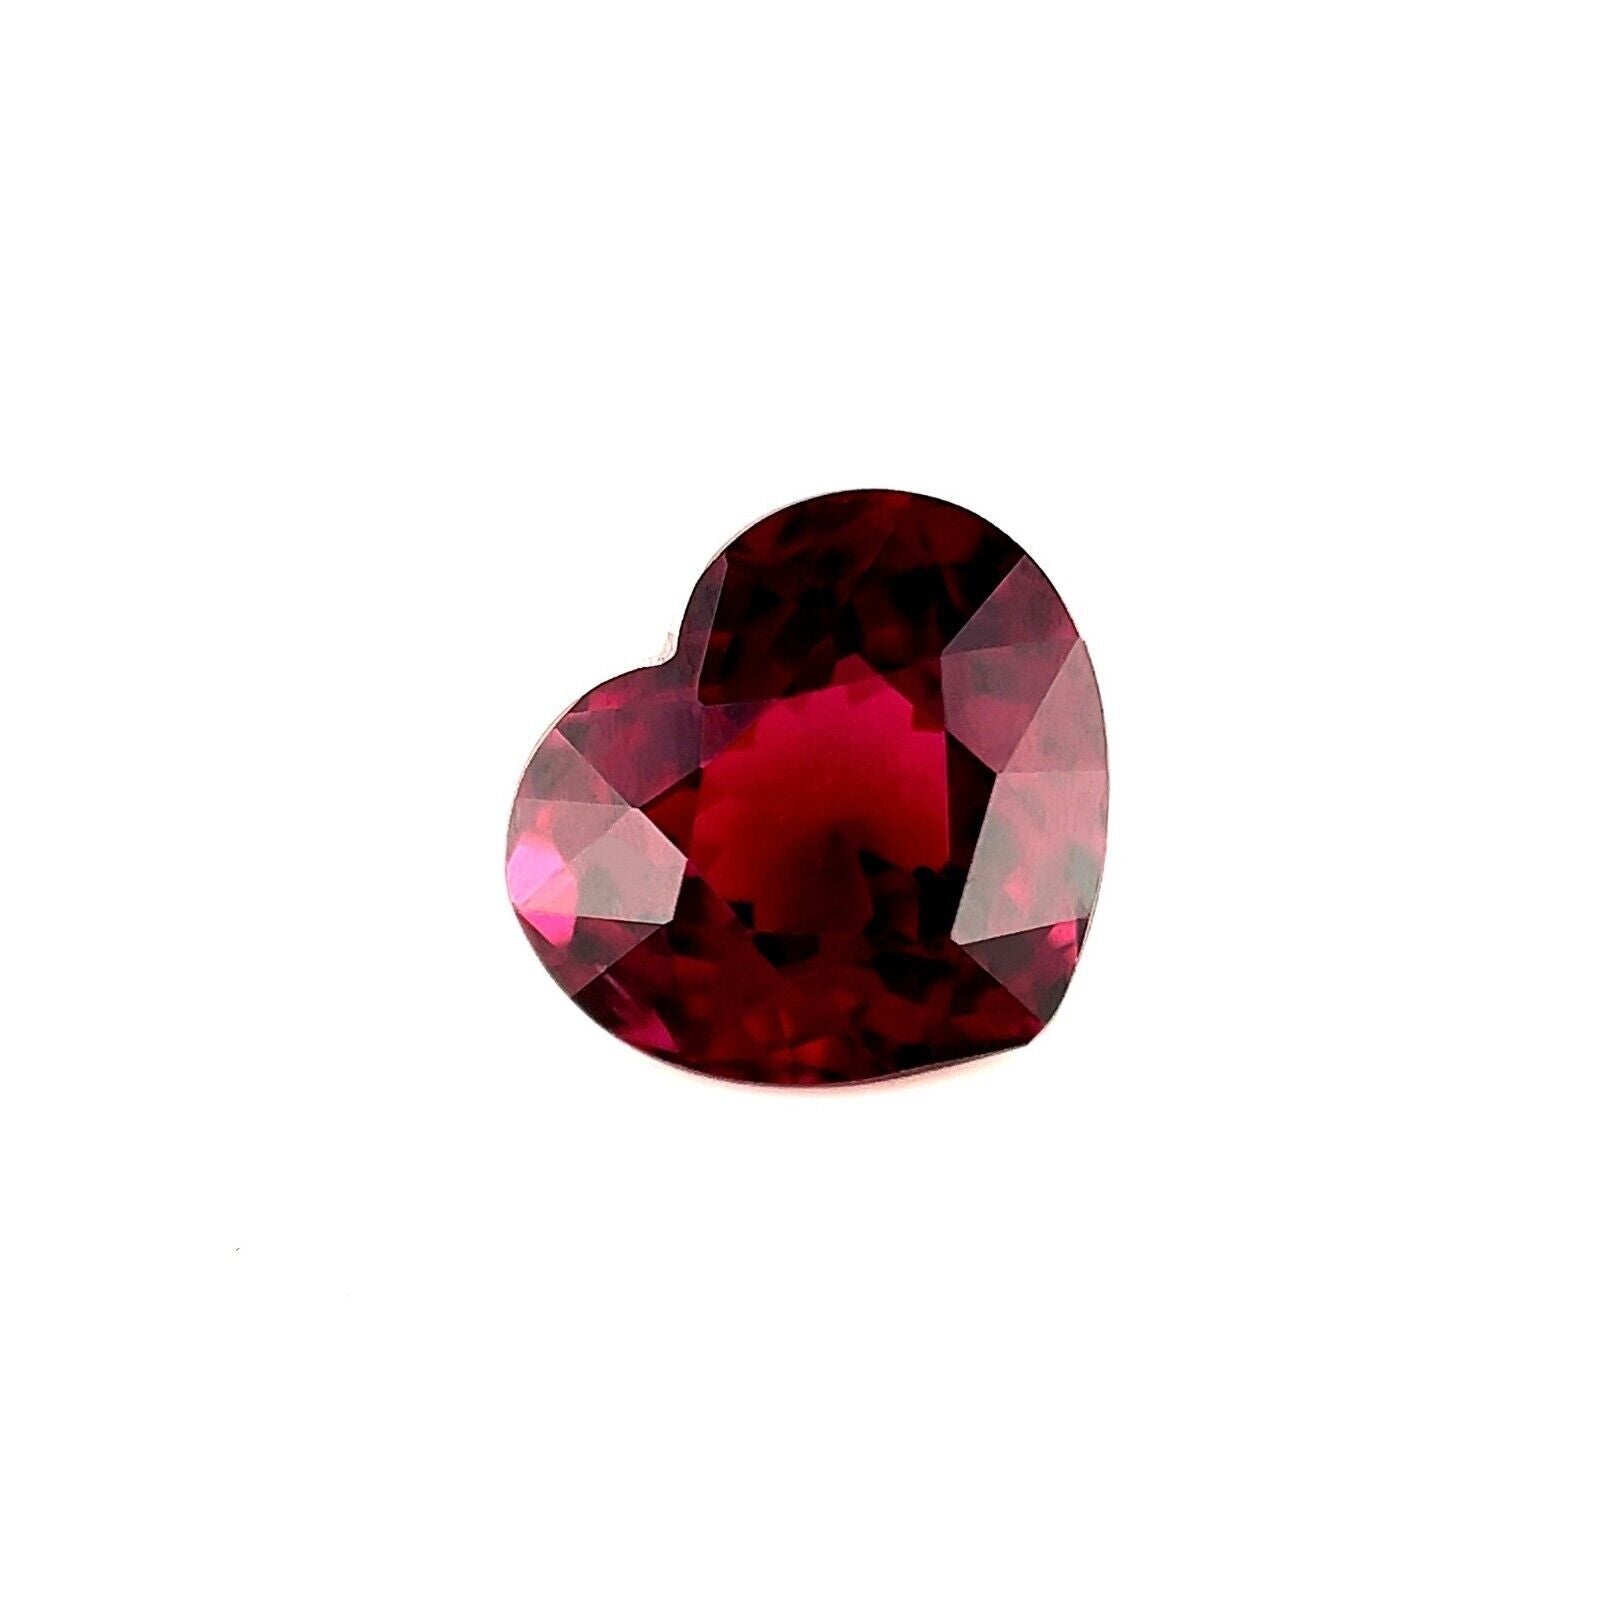 Fine pierre précieuse non sertie de 2,70 carats en rhodolite rose violacé taille cœur, 8,4 x 7,6 mm VS